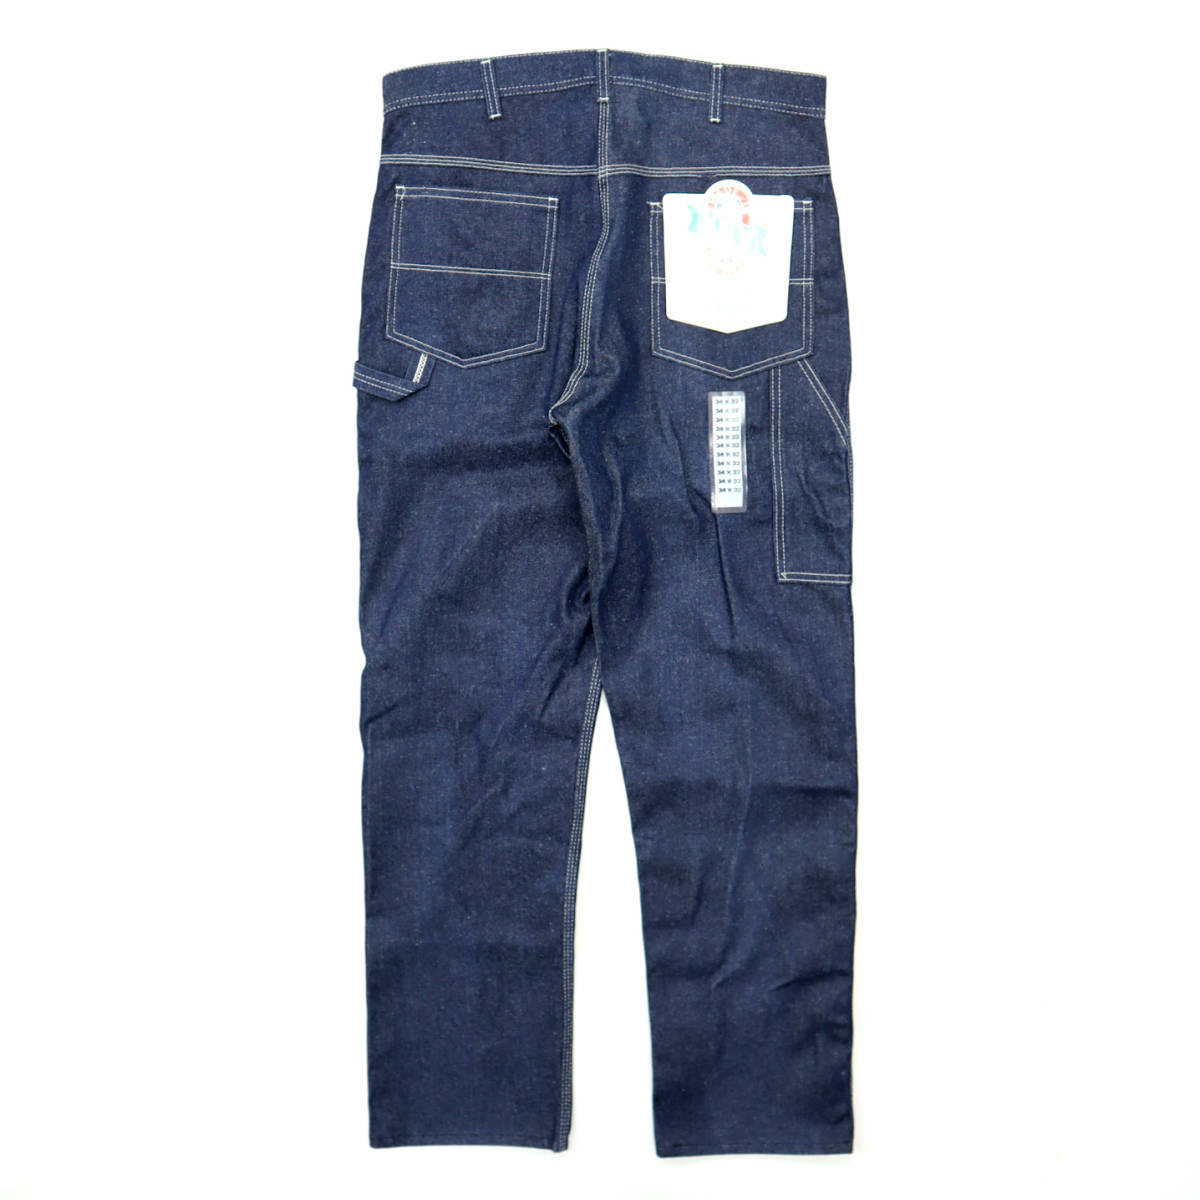 * бесплатная доставка * неиспользуемый товар USA производства 80s Vintage KEY ключ Denim painter's pants Work джинсы 80 годы б/у одежда мужской 90s 90 годы 